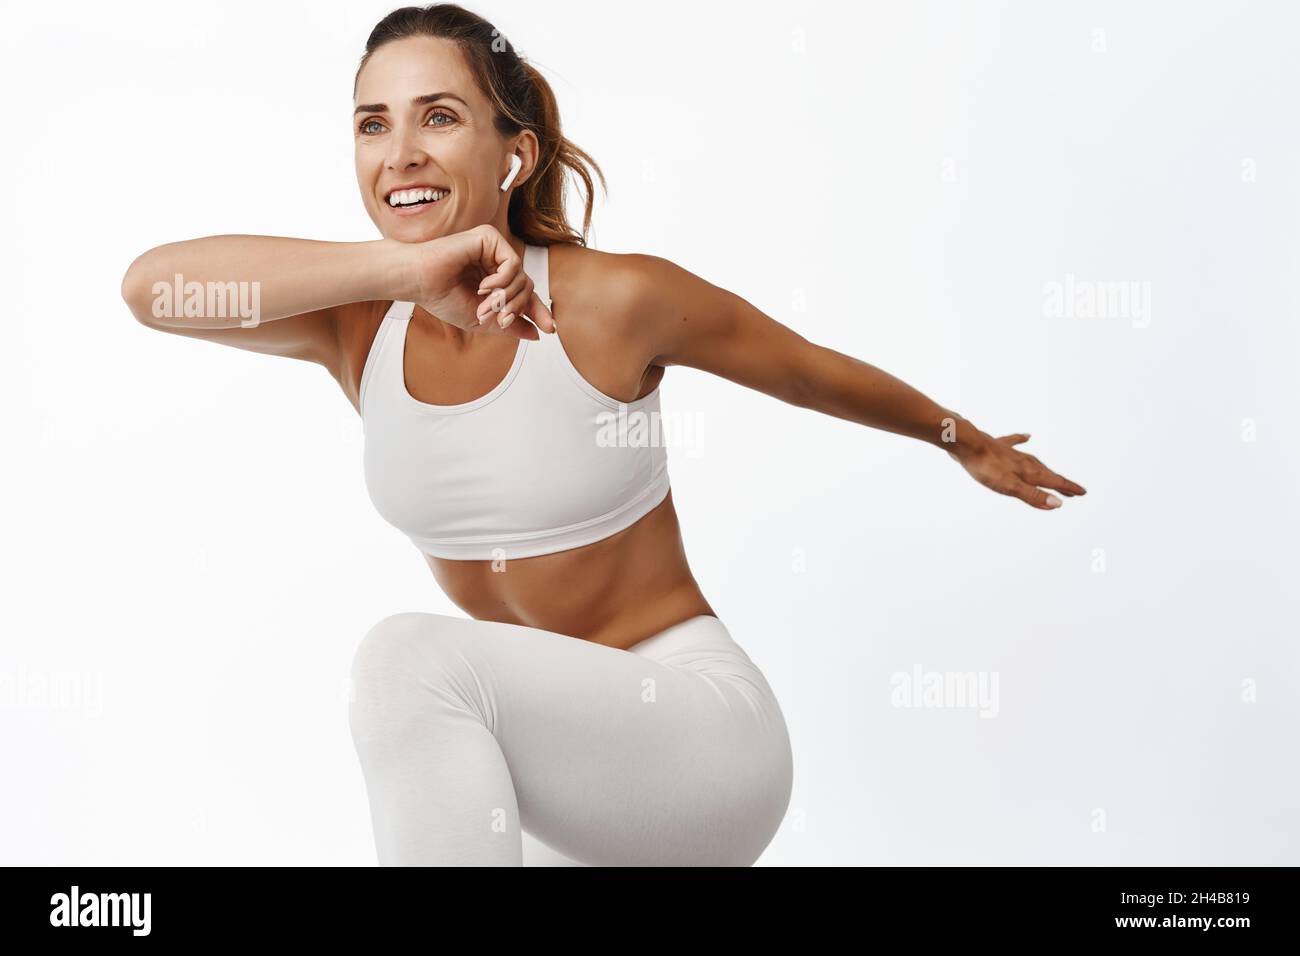 Porträt einer Sportlerin, die ihren Körper streckt, trainiert, ihr Bein hebt und lächelt, läuft, auf weißem Hintergrund steht Stockfoto